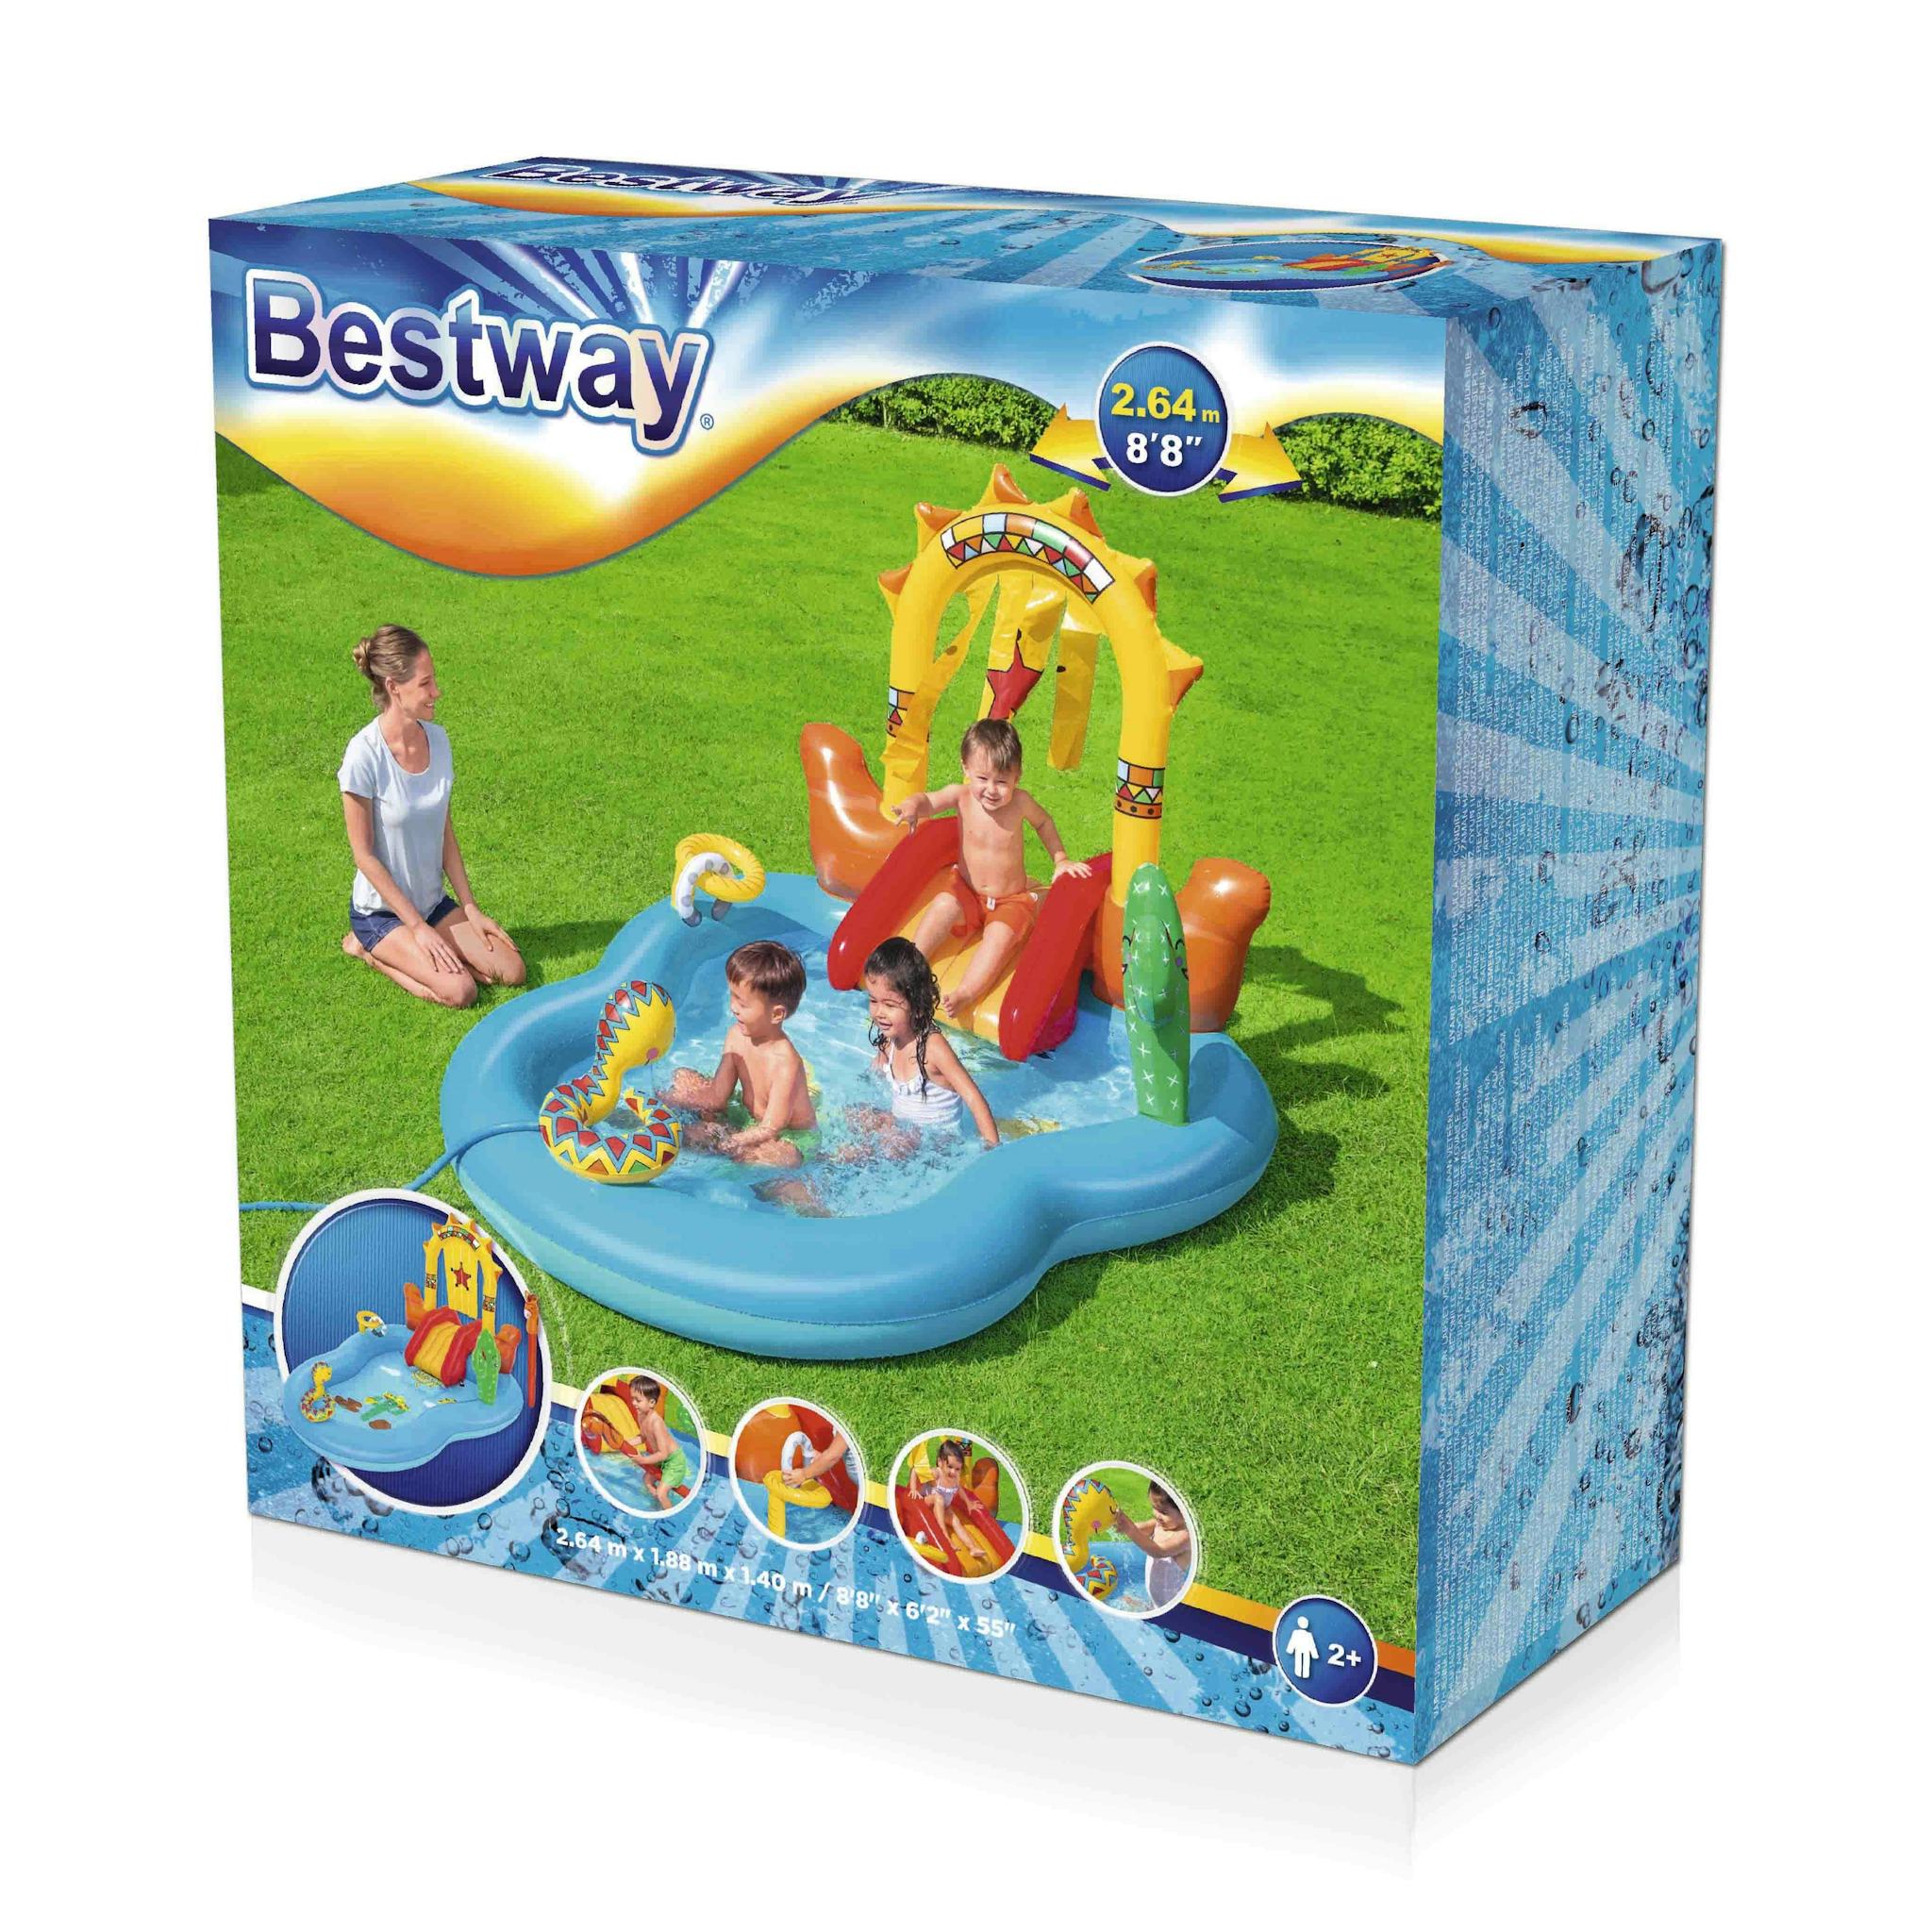 Giochi gonfiabili per bambini Playcenter gonfiabile Far West Bestway 11